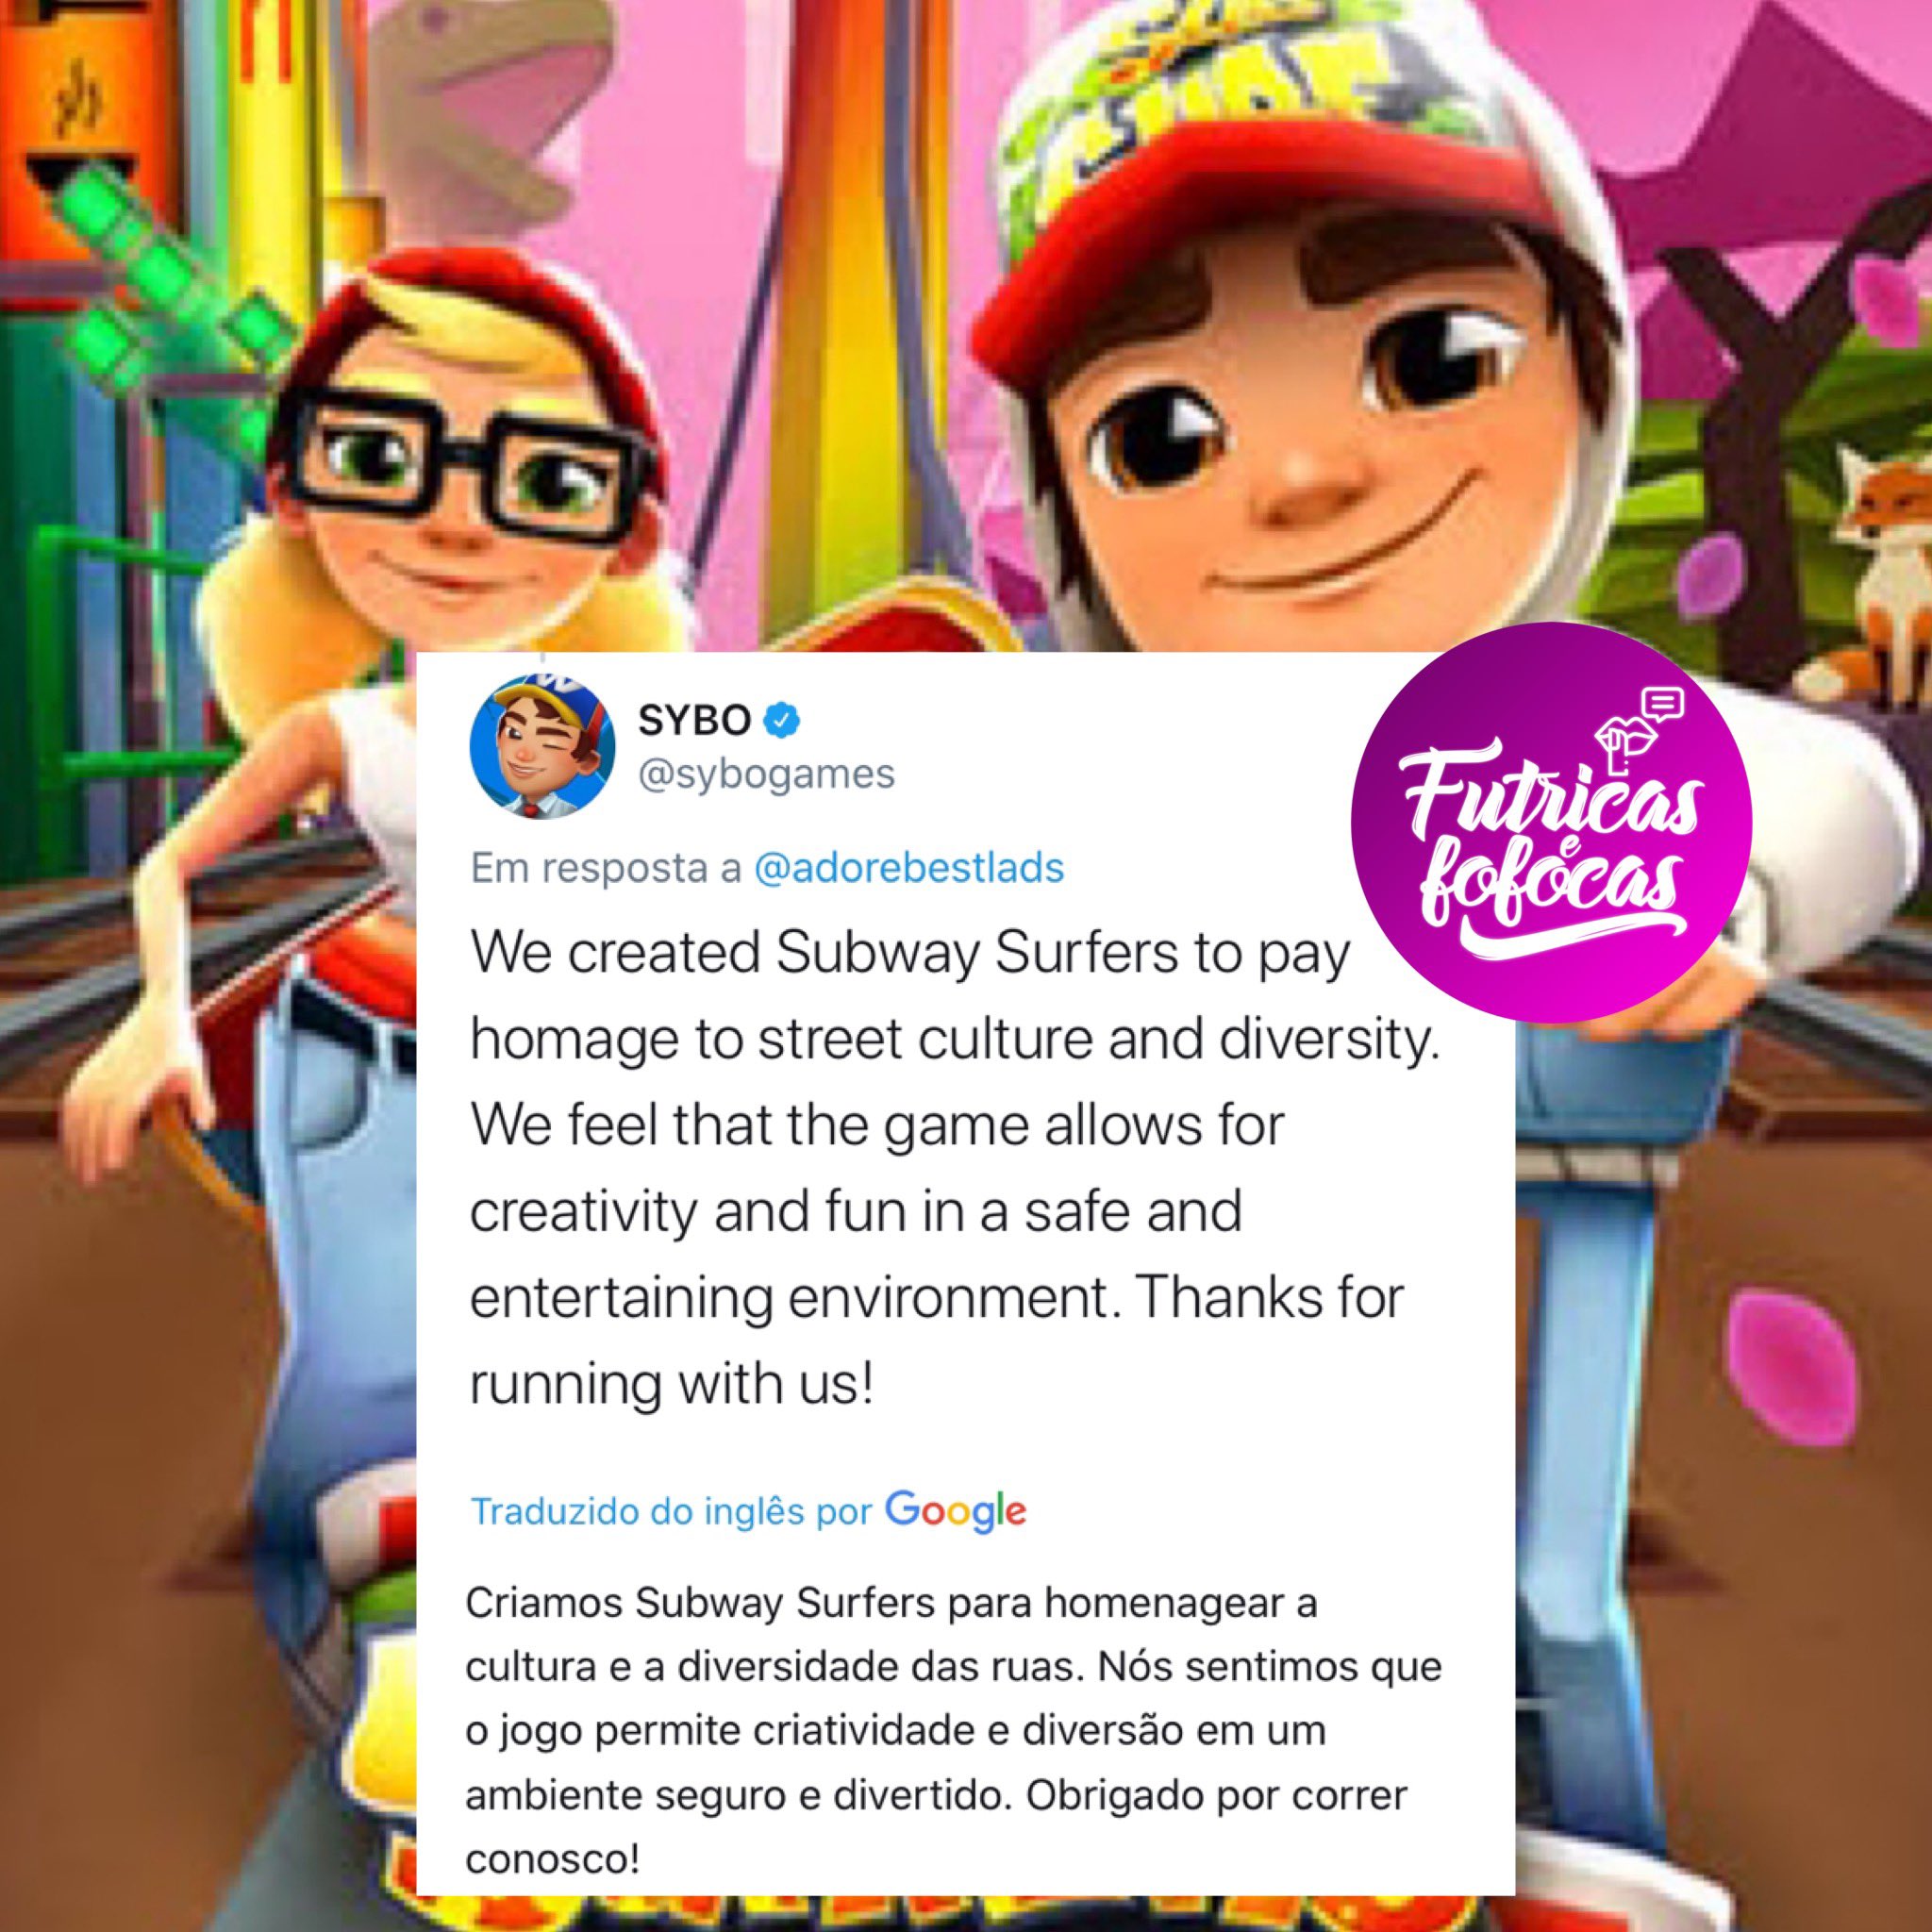 FUTRICAS on X: Gente a história que tá circulando sobre o jogo Subway  Surfers é FALSA. A empresa que criou o jogo, desmentiu aqui no twitter   / X